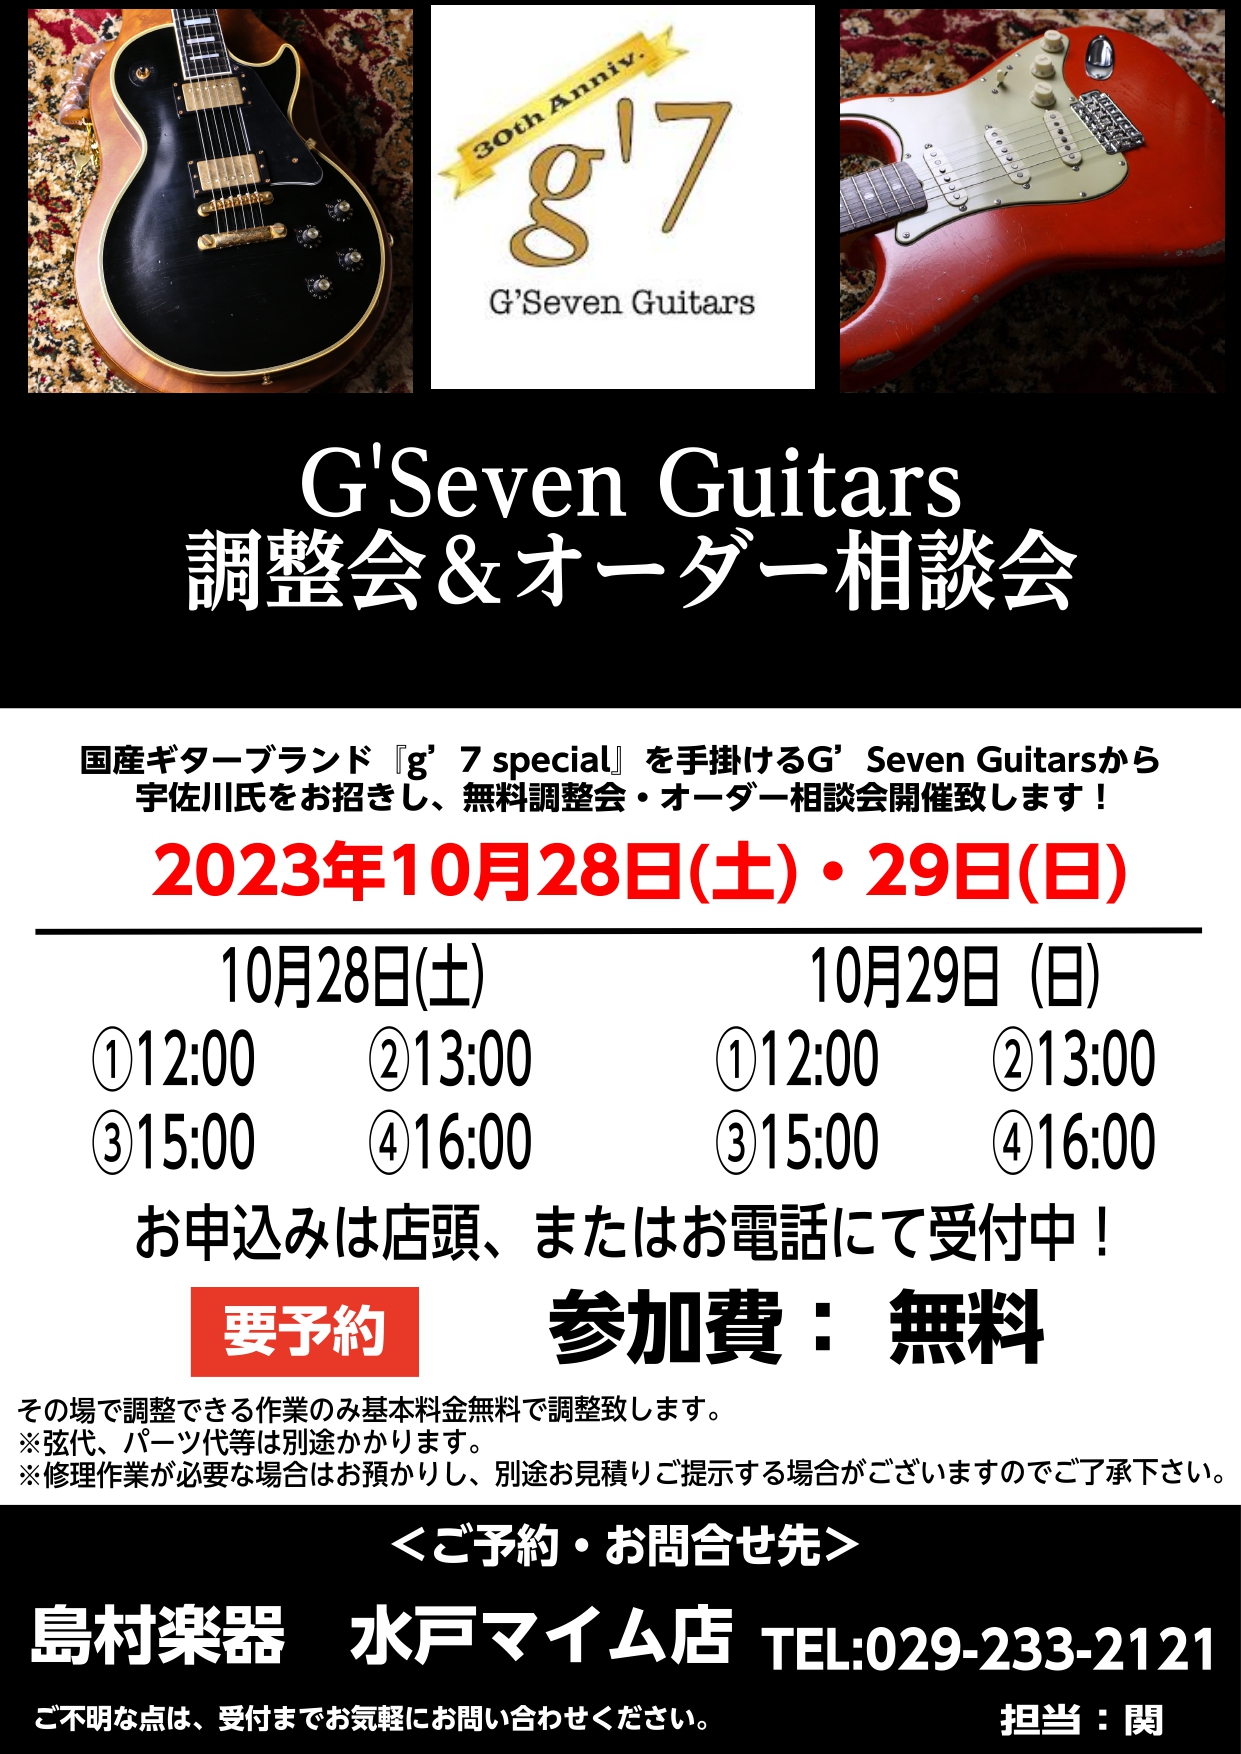 2023年10月28日(土)・29日(日)　G’Seven Guitars 無料調整会＆オーダー相談会を開催することになりました！！ 当店でも大好評をいただいておりますG'Seven Guitarsとのコラボイベントになります。 CONTENTS【ご予約・お問い合わせ】●G'Seven Guitar […]